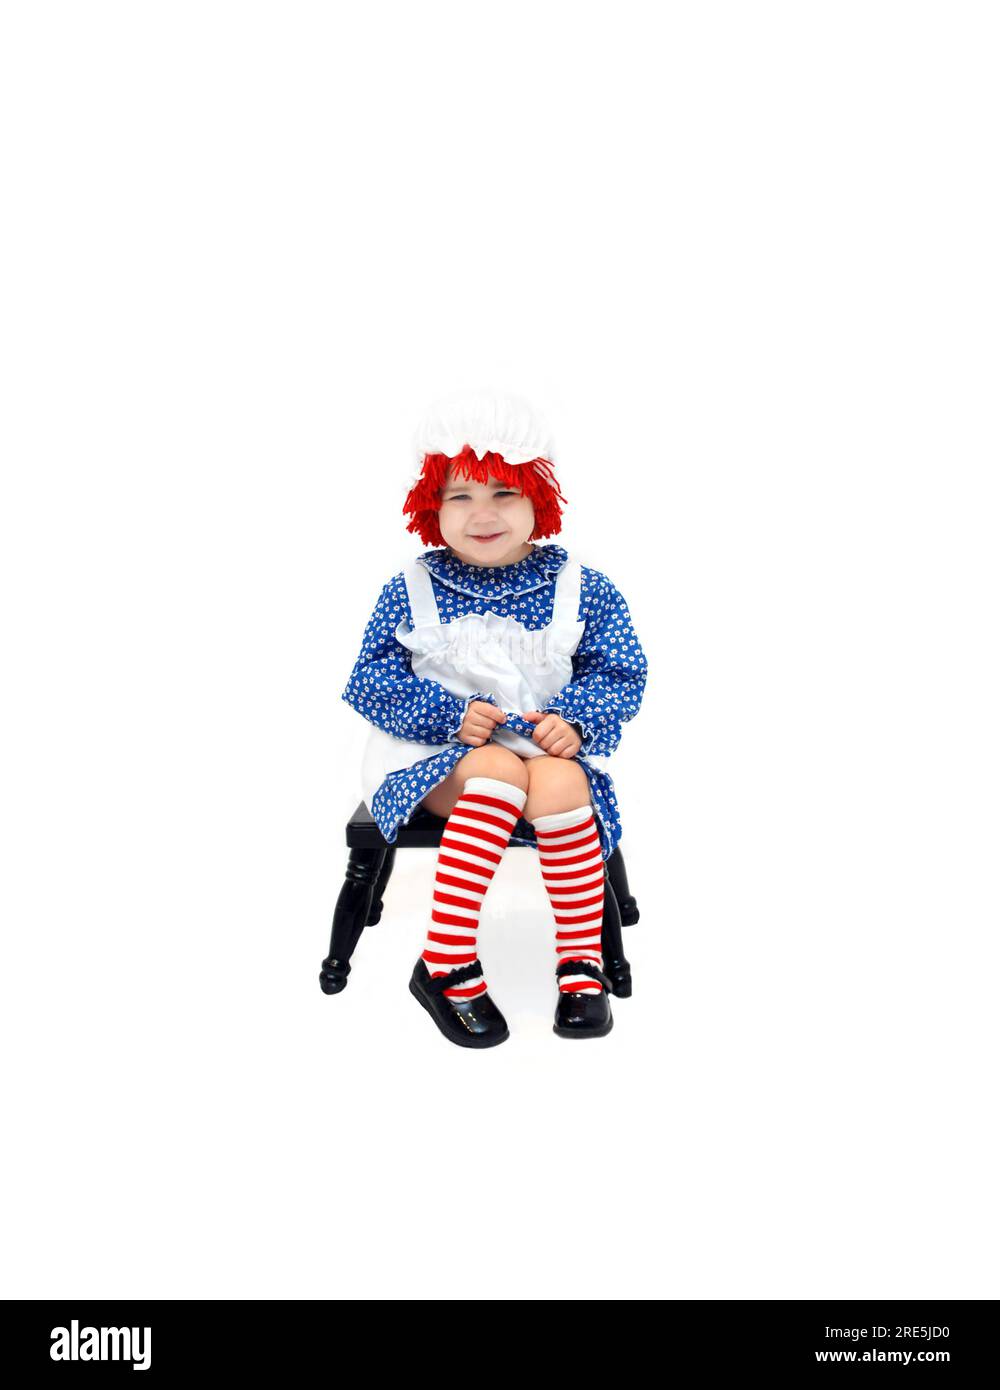 Das süße kleine Mädchen ist als Stoffpuppe verkleidet. Sie grinst schamlos und sitzt auf einem schwarzen Melkhocker. Stockfoto